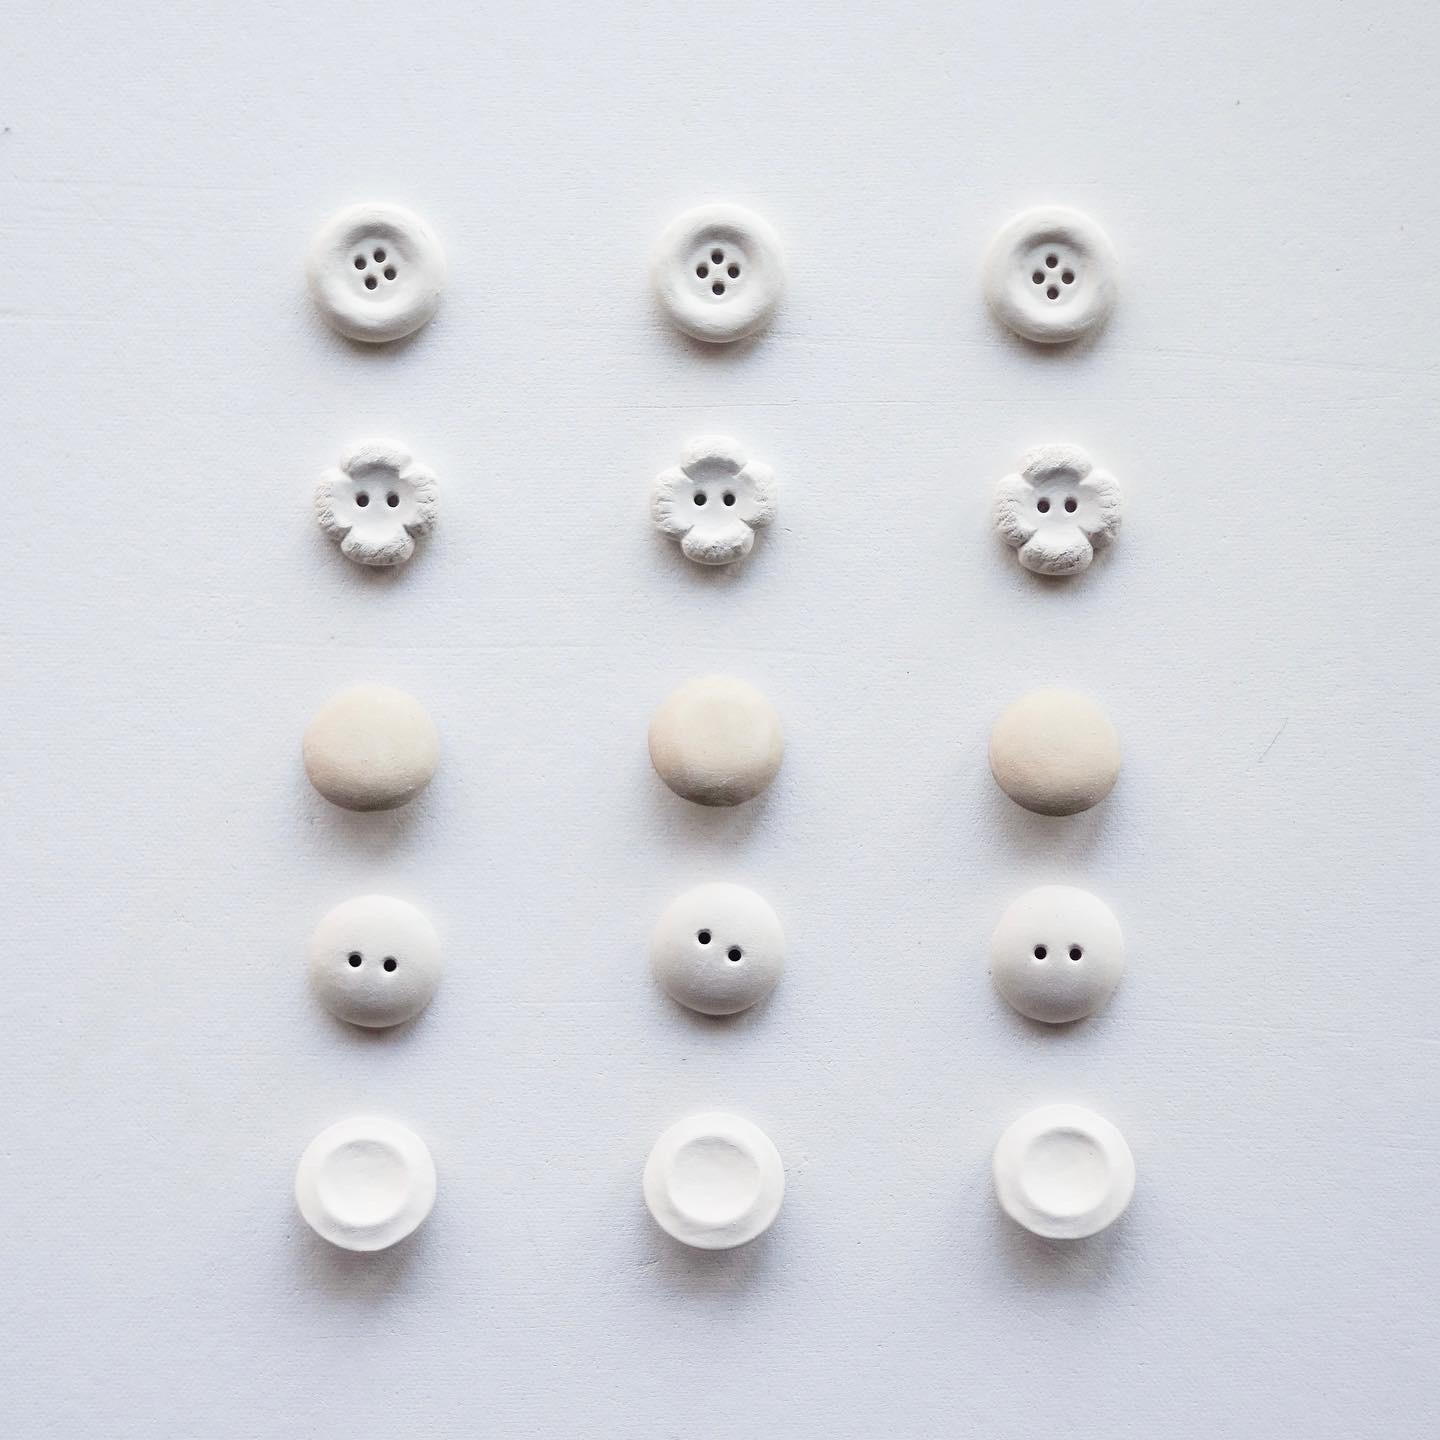 いろいろな種類の成形された陶のボタン